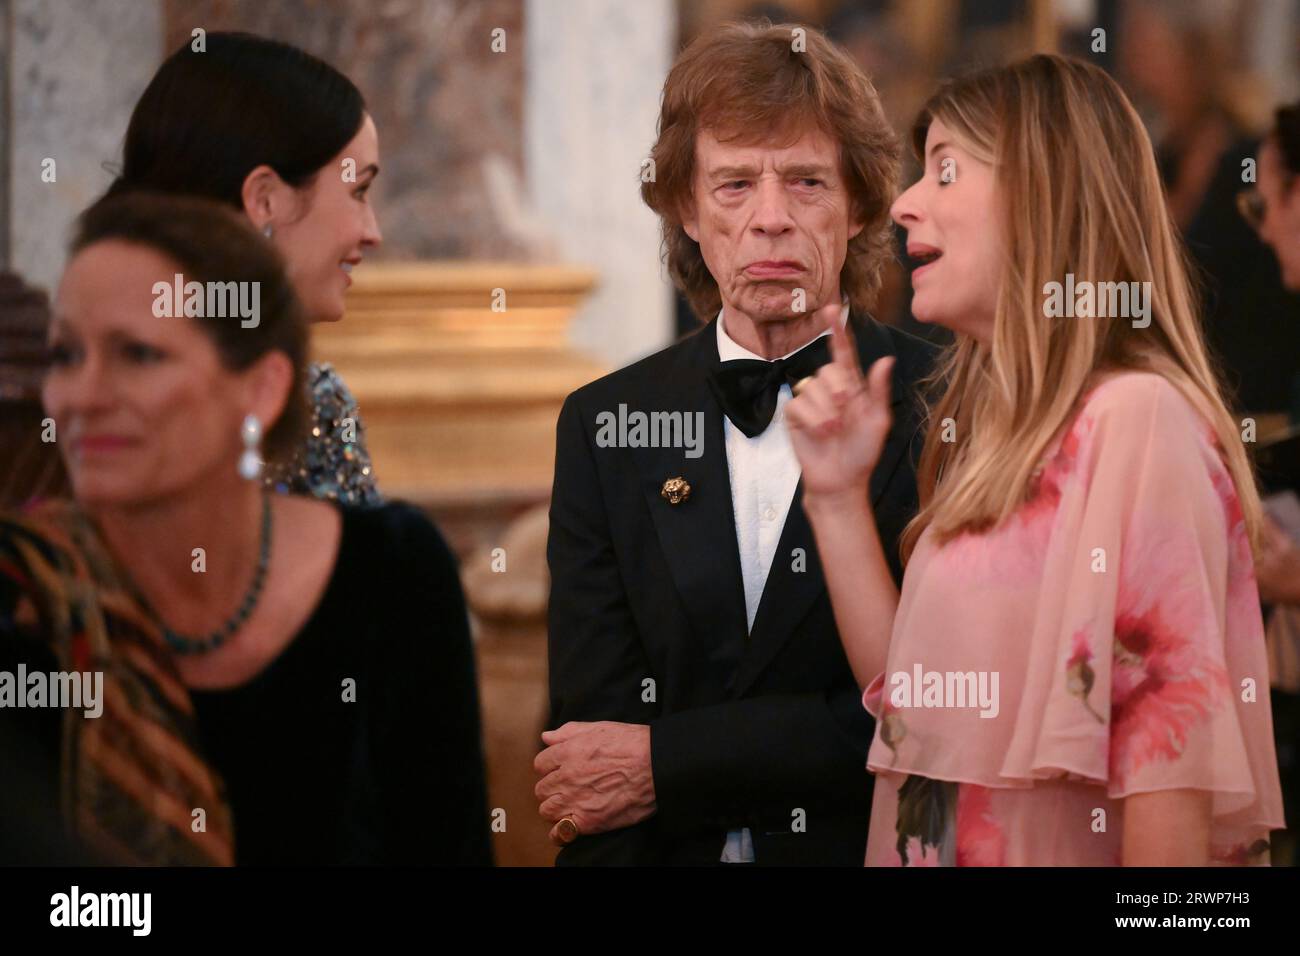 Mick Jagger besuchte das Staatsbankett im Schloss von Versailles, Paris, während des Staatsbesuchs in Frankreich. Bilddatum: Mittwoch, 20. September 2023. Stockfoto